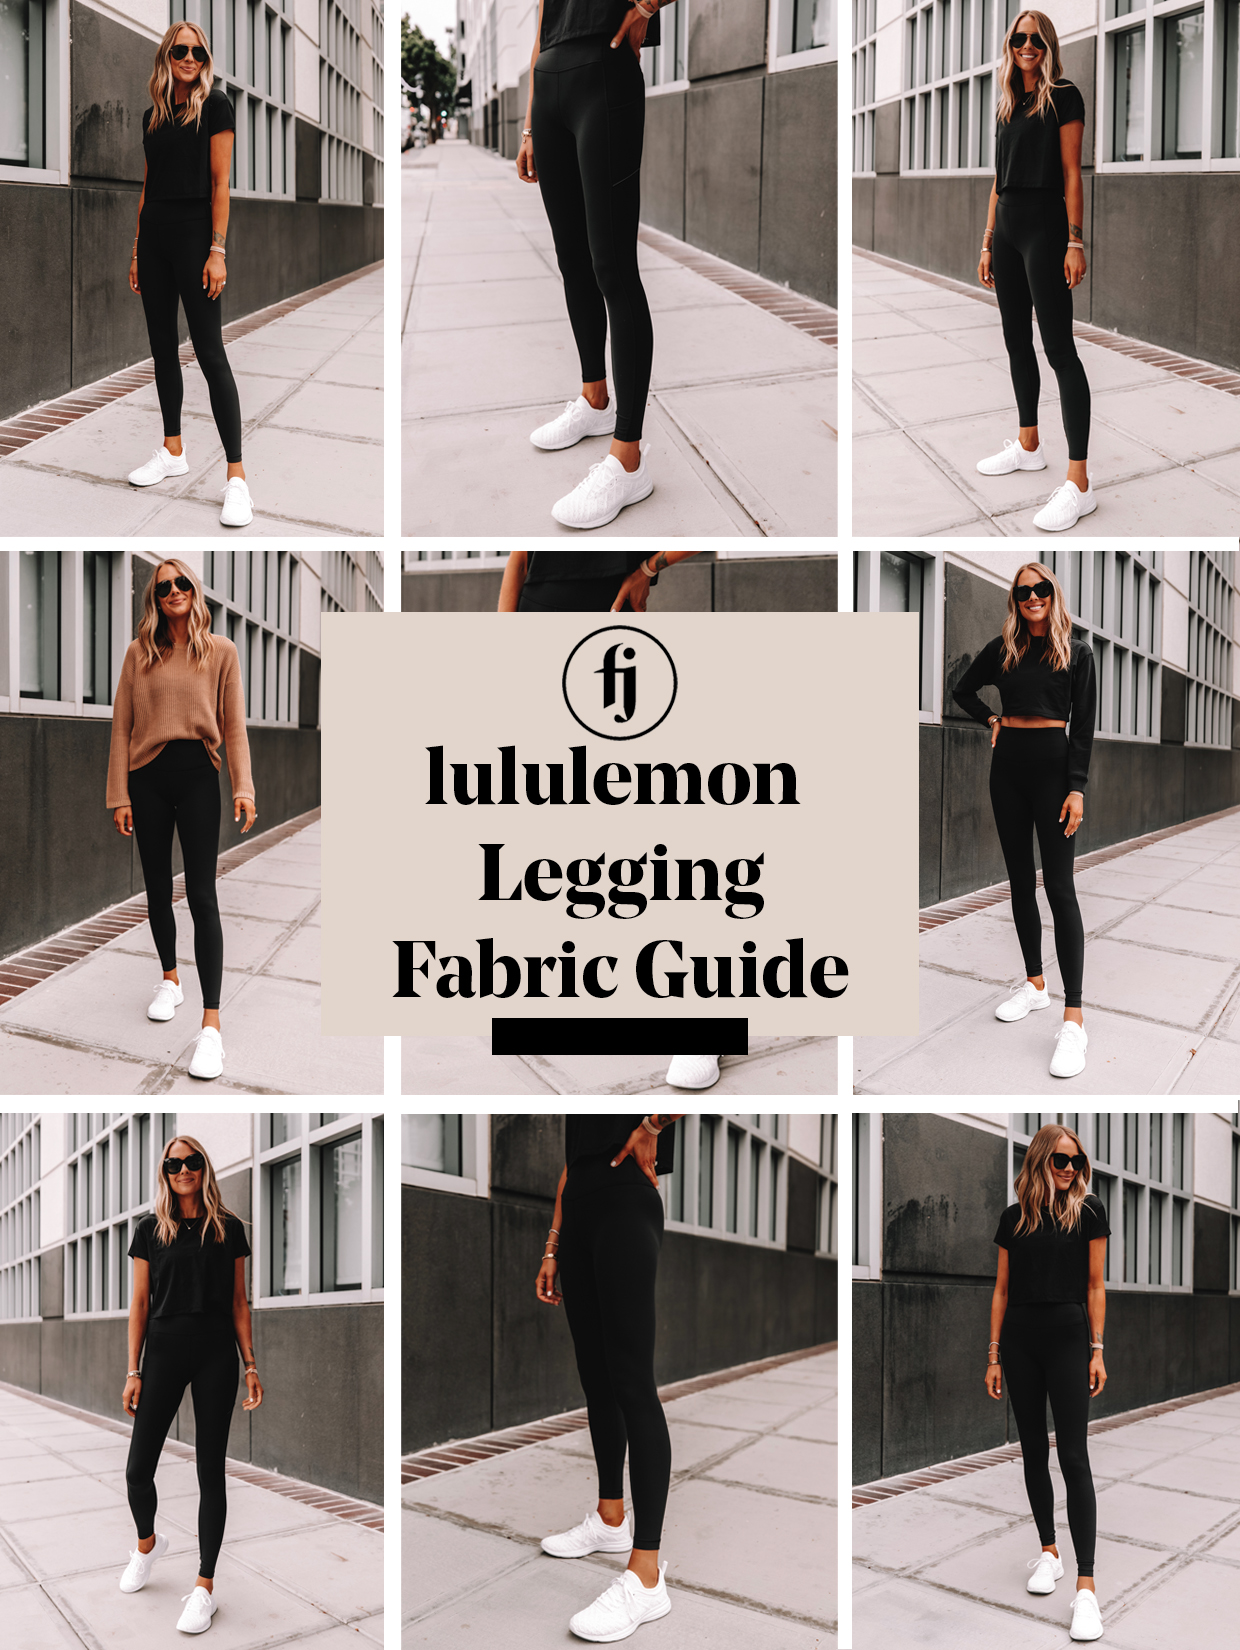 https://fashionjackson.com/wp-content/uploads/2020/07/lululemon-legging-guide.jpg